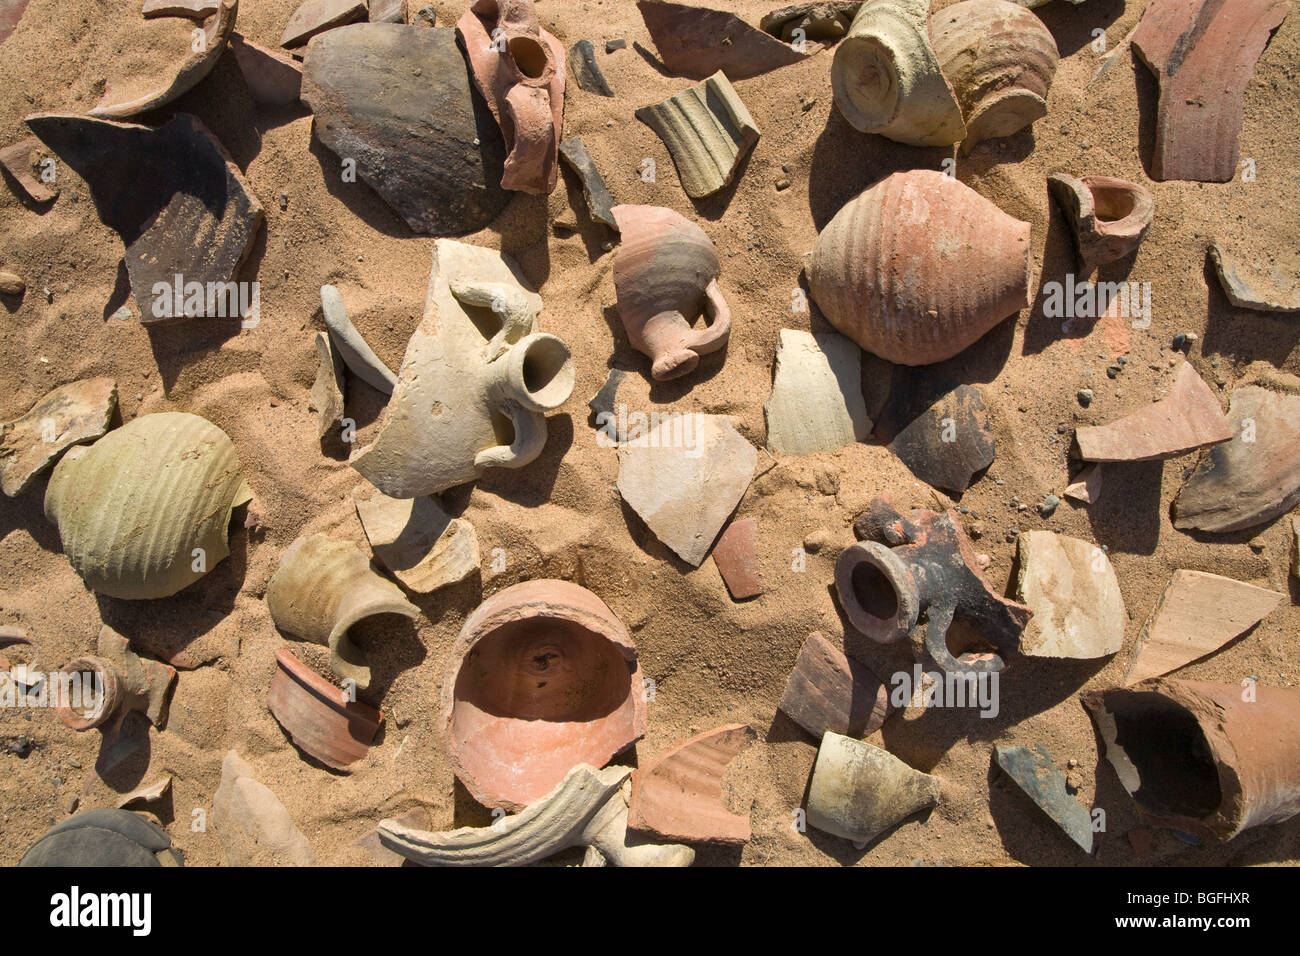 Des piles de vieux tessons de poterie sur le sol du désert à Daydamus Roman Fort dans l'Est du désert d'Égypte, l'Afrique du Nord Banque D'Images